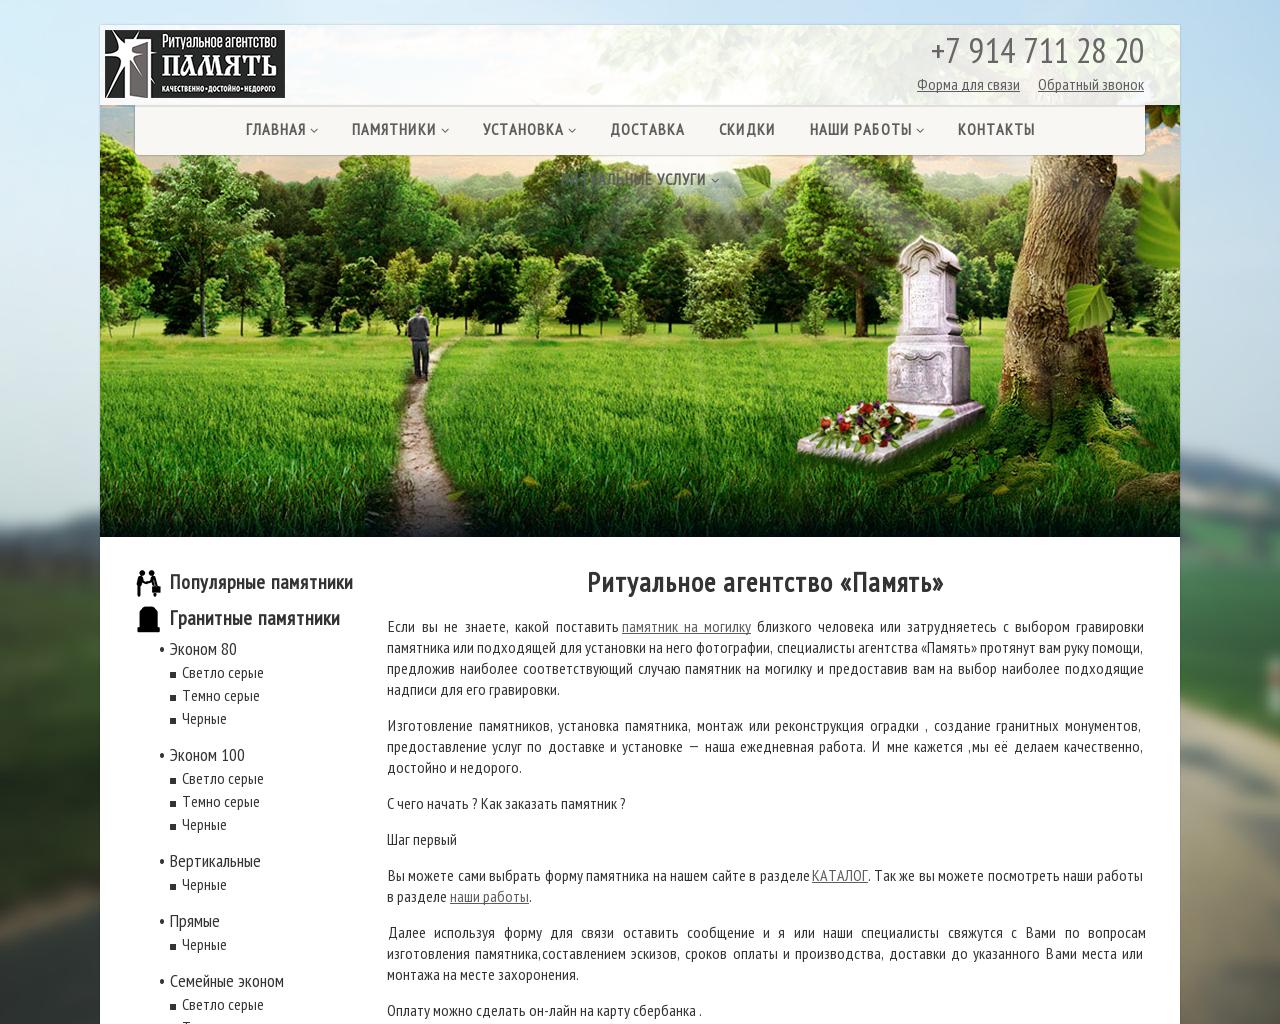 Изображение сайта pavelrai.ru в разрешении 1280x1024